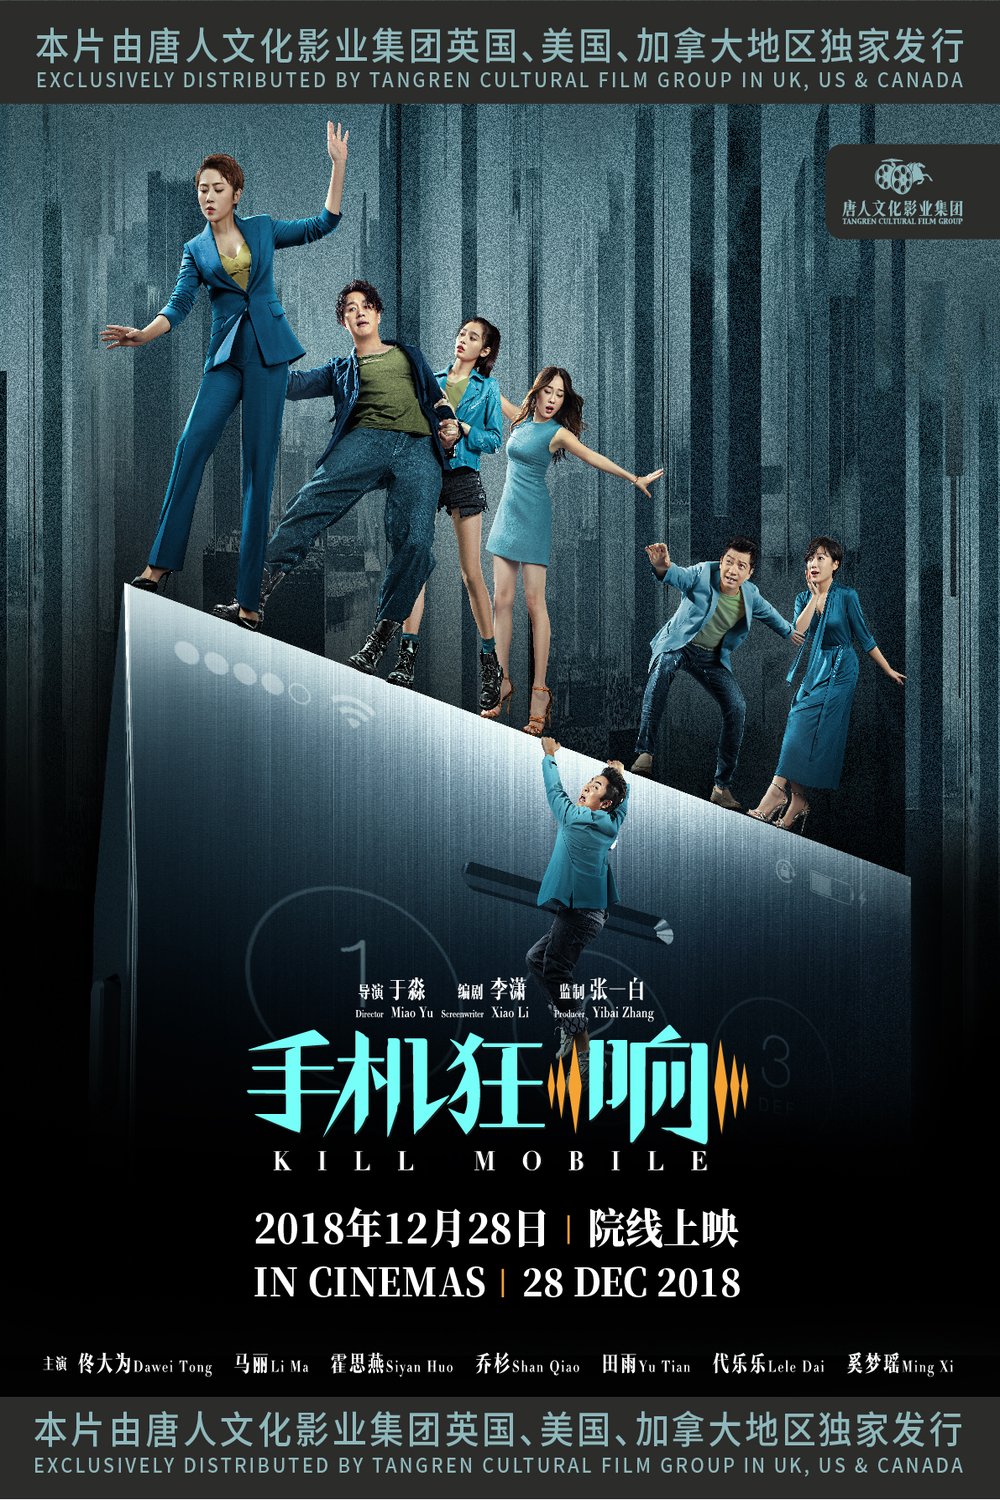 Mandarin poster of the movie Shoujikuang xiang